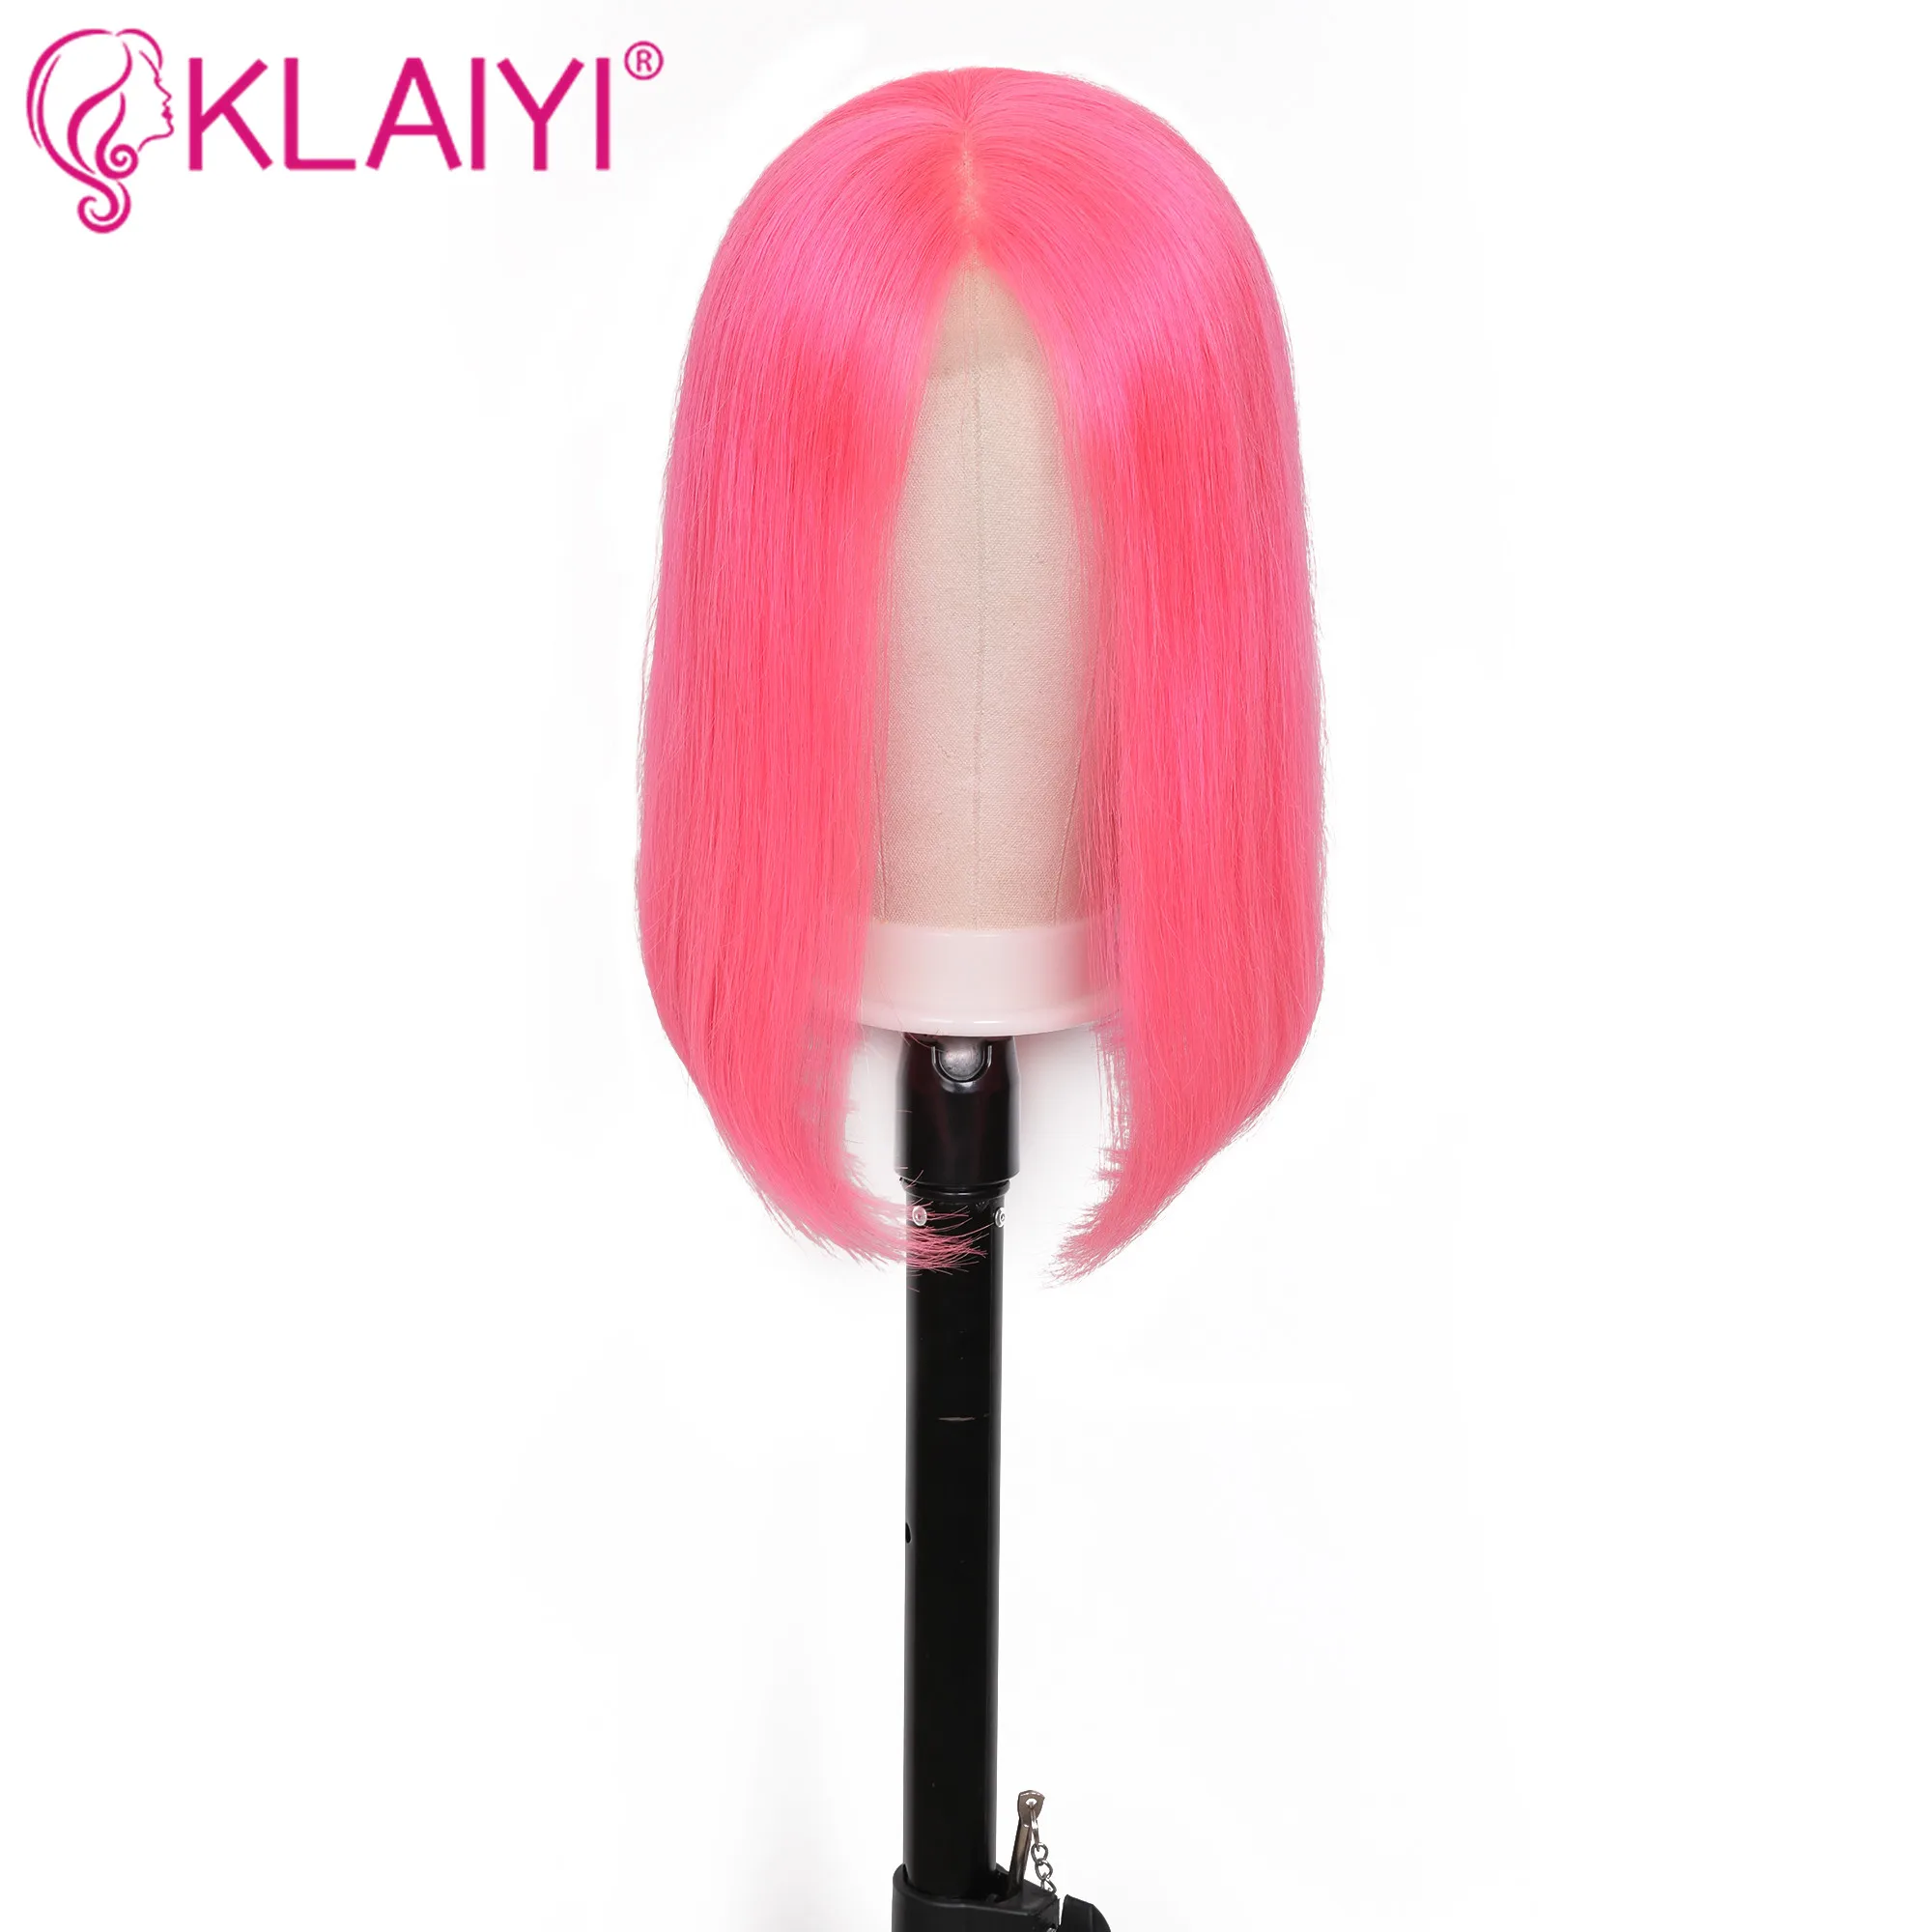 Klaiyi волосы прямые розовый боб парик их натуральных волос парики 8-14 дюймов предварительно сорванные бразильские волосы remy 13*4 дюймов